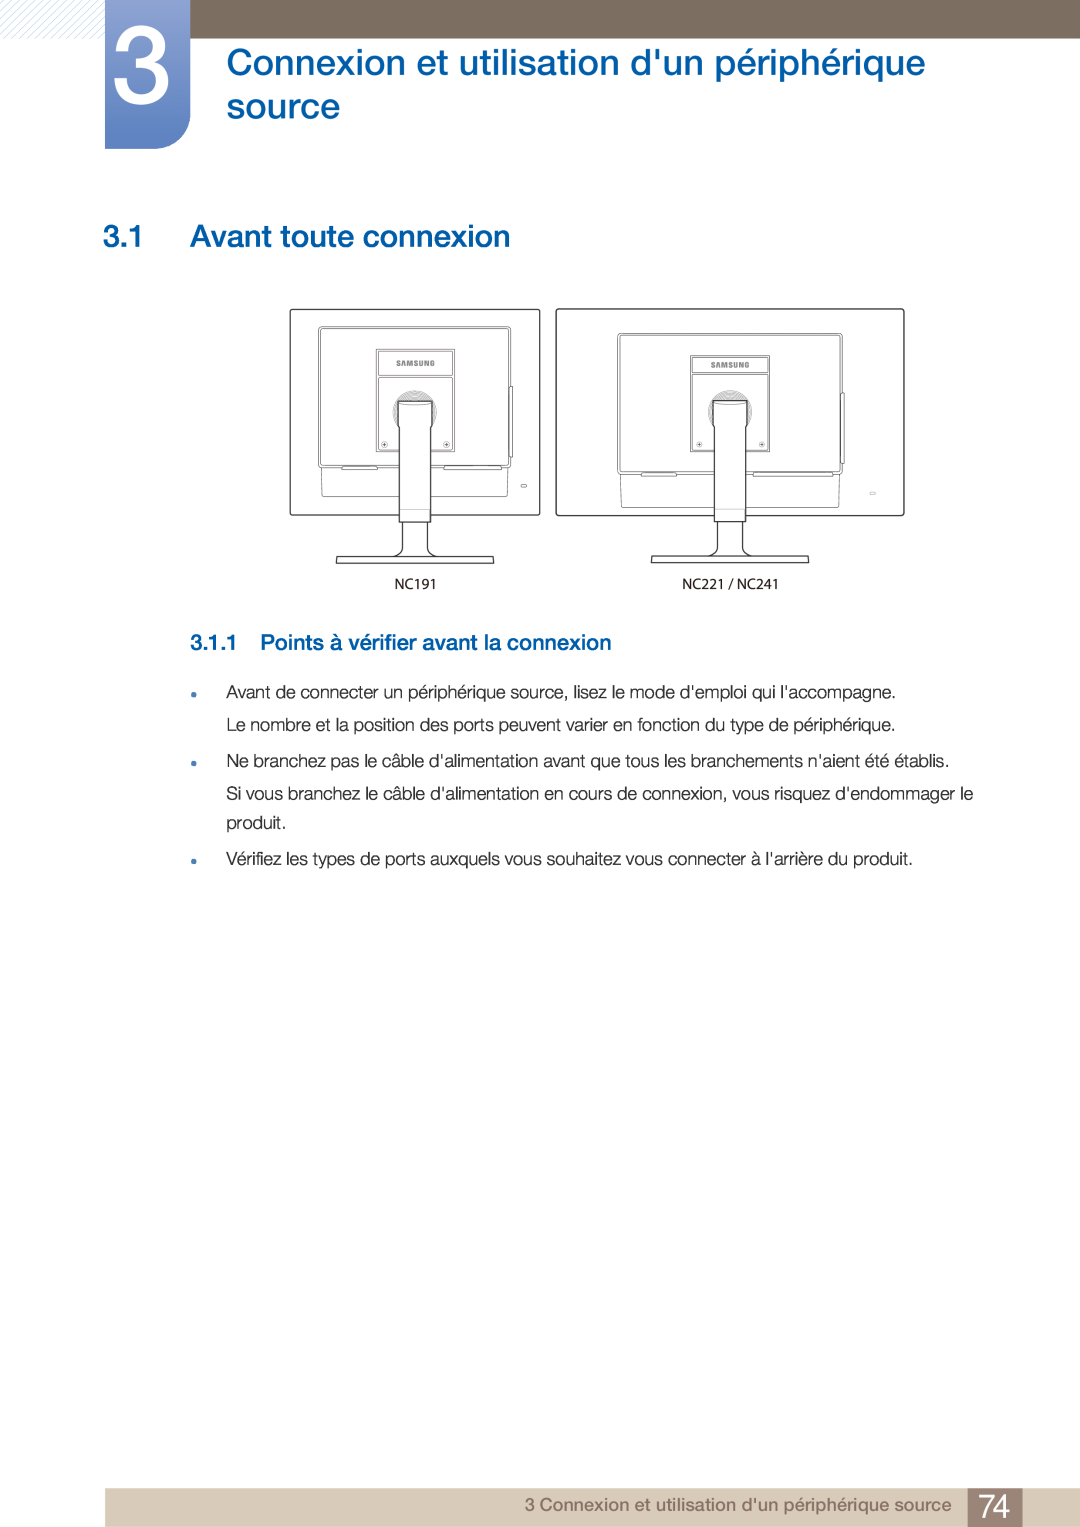 Samsung LF22NTBHBNM/EN, LF22FN1PFBZXEN manual Connexionsource et utilisation dun périphérique, Avant toute connexion 